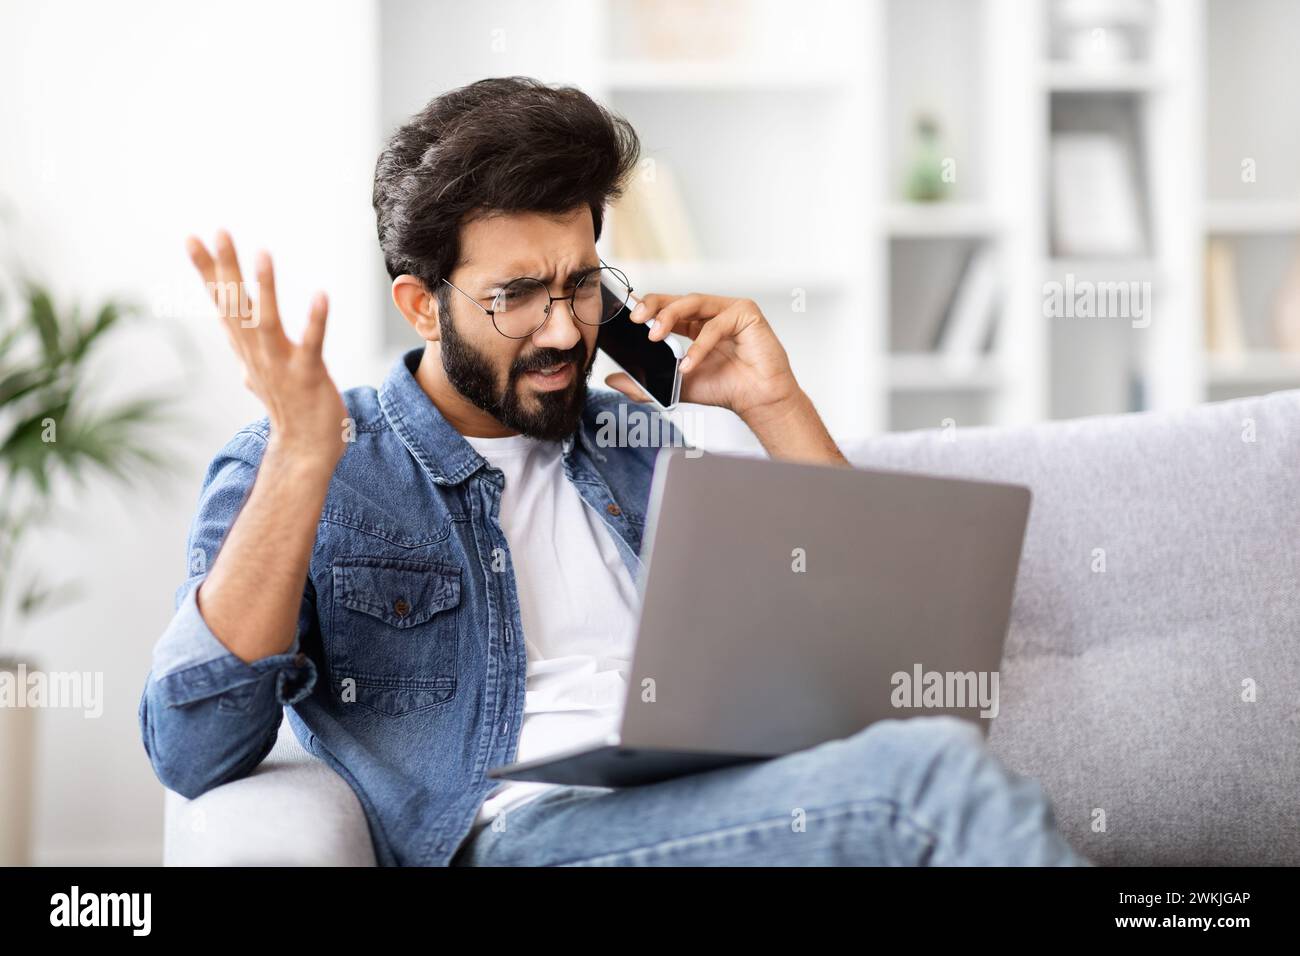 Infastidito indiano che faceva un gesto confuso durante una telefonata stressante a casa Foto Stock